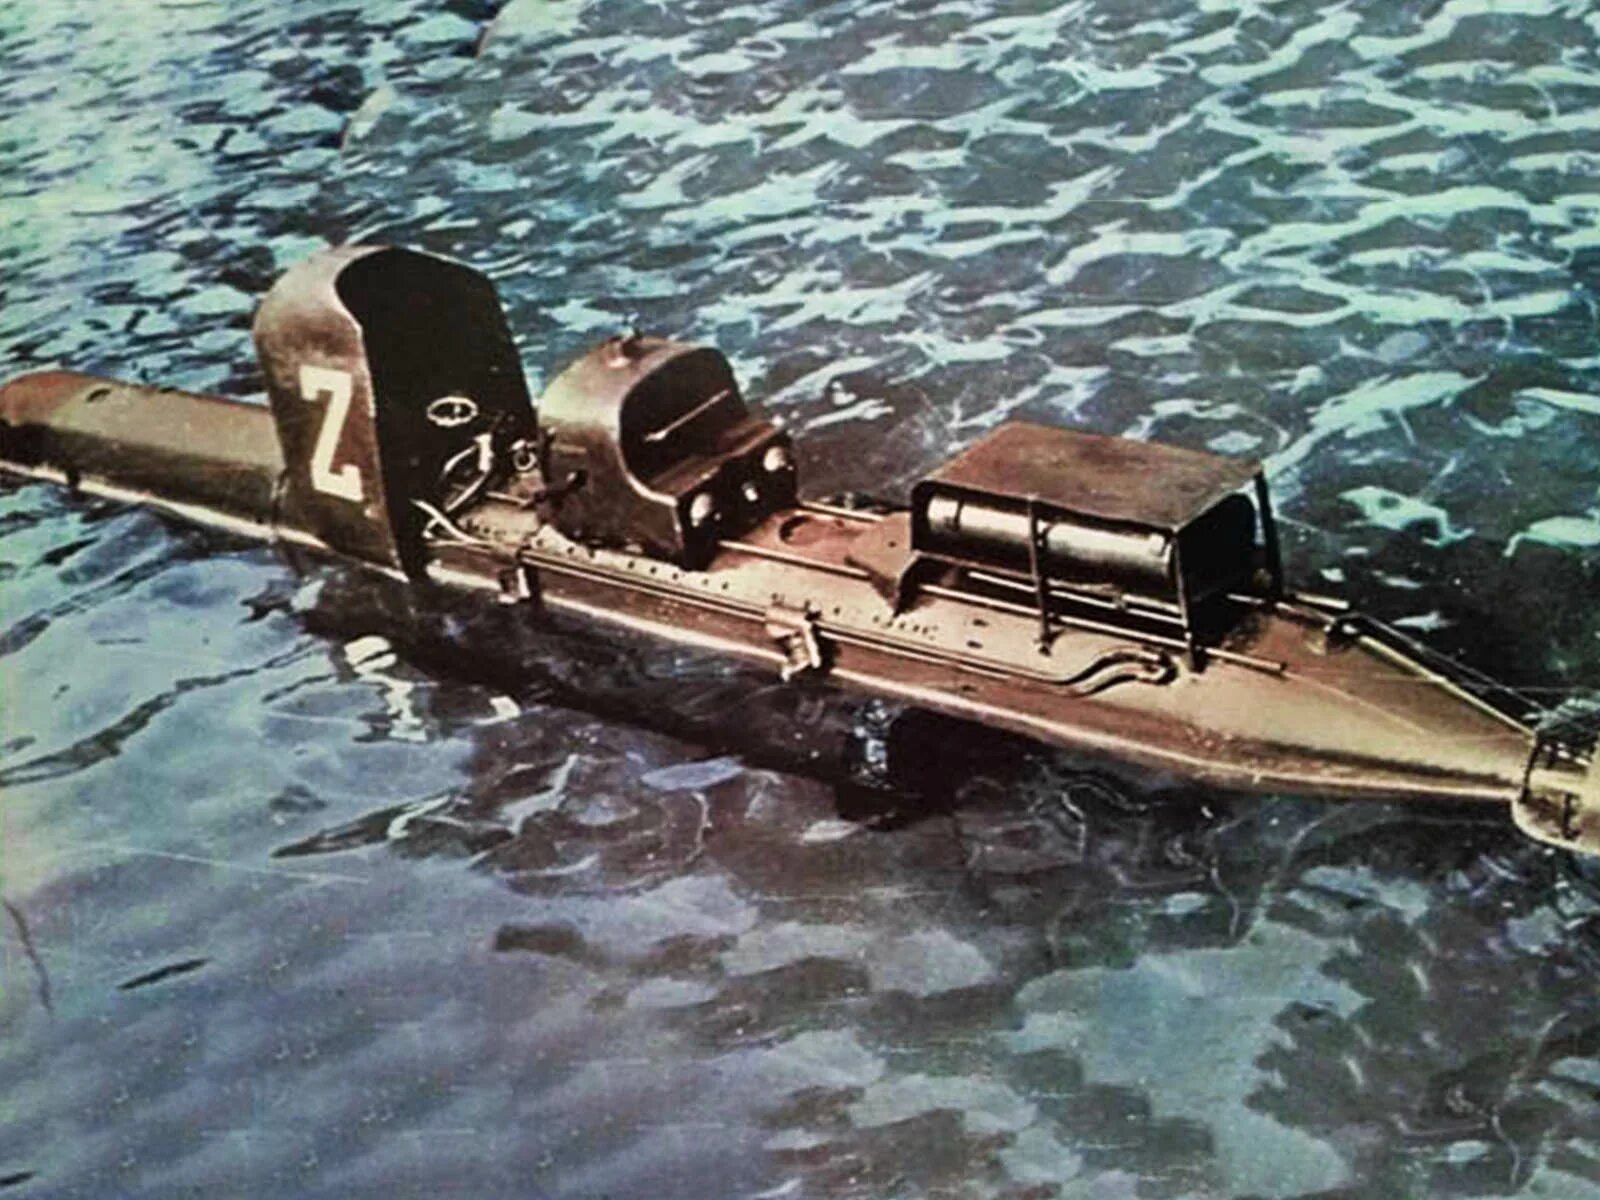 Управляемые торпеды второй мировой войны. Итальянские торпеды управляемые пловцами. Сверхмалые подводные лодки второй мировой войны. Итальянские боевые пловцы во второй мировой войне. Управляемые торпеды